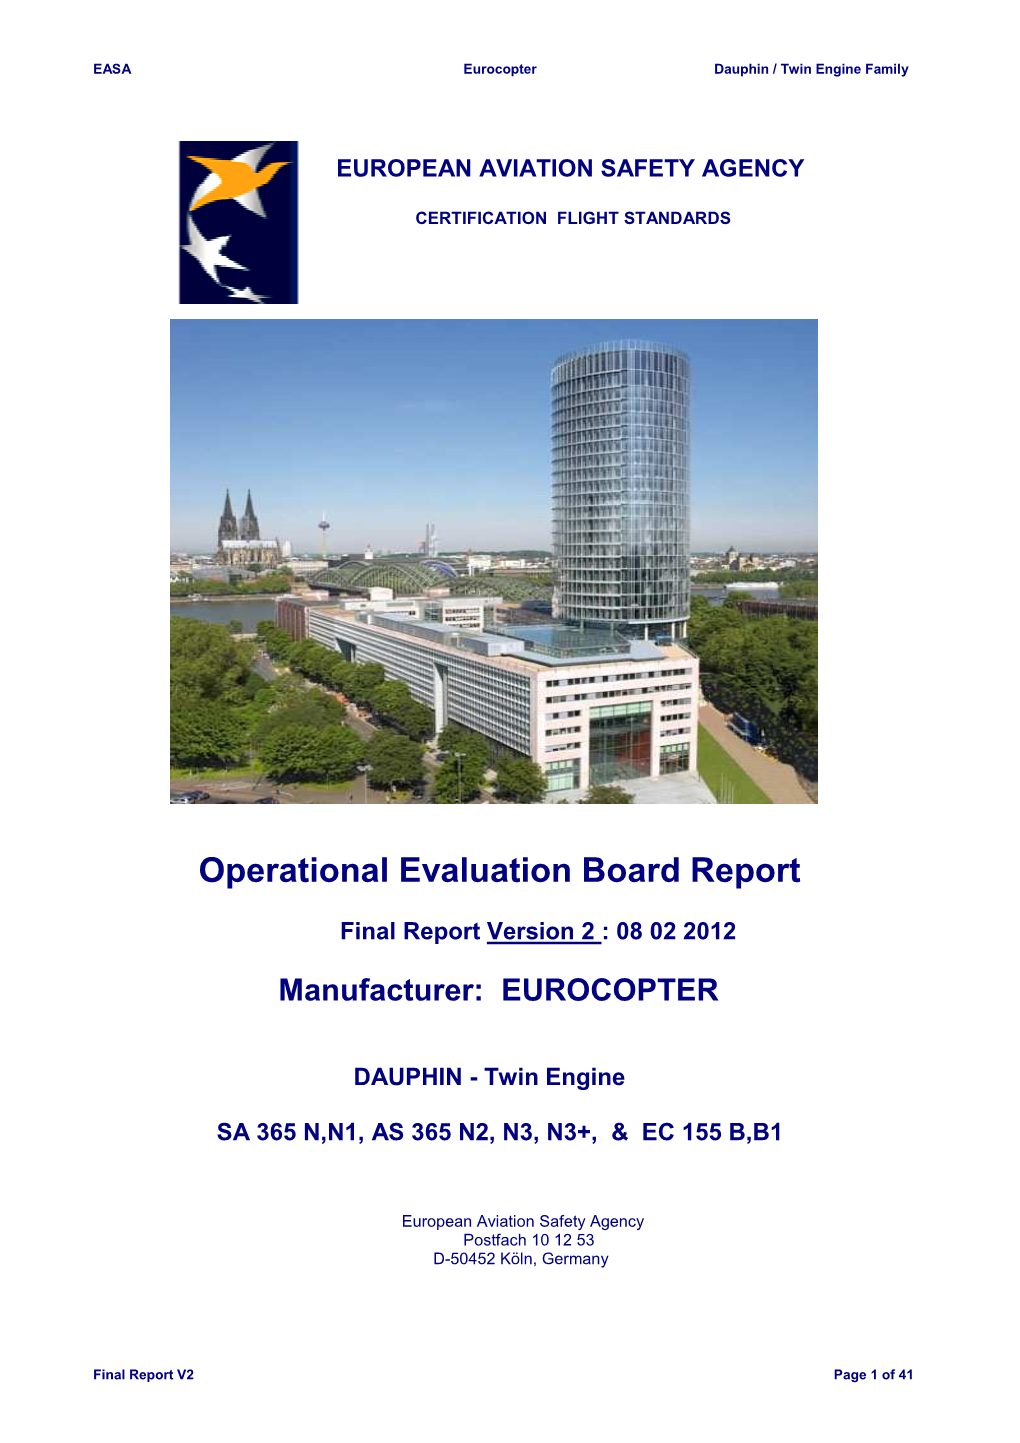 EASA-OEB-Final -Reporteurocopter AS 365 EC 155 B-B1-02-080212